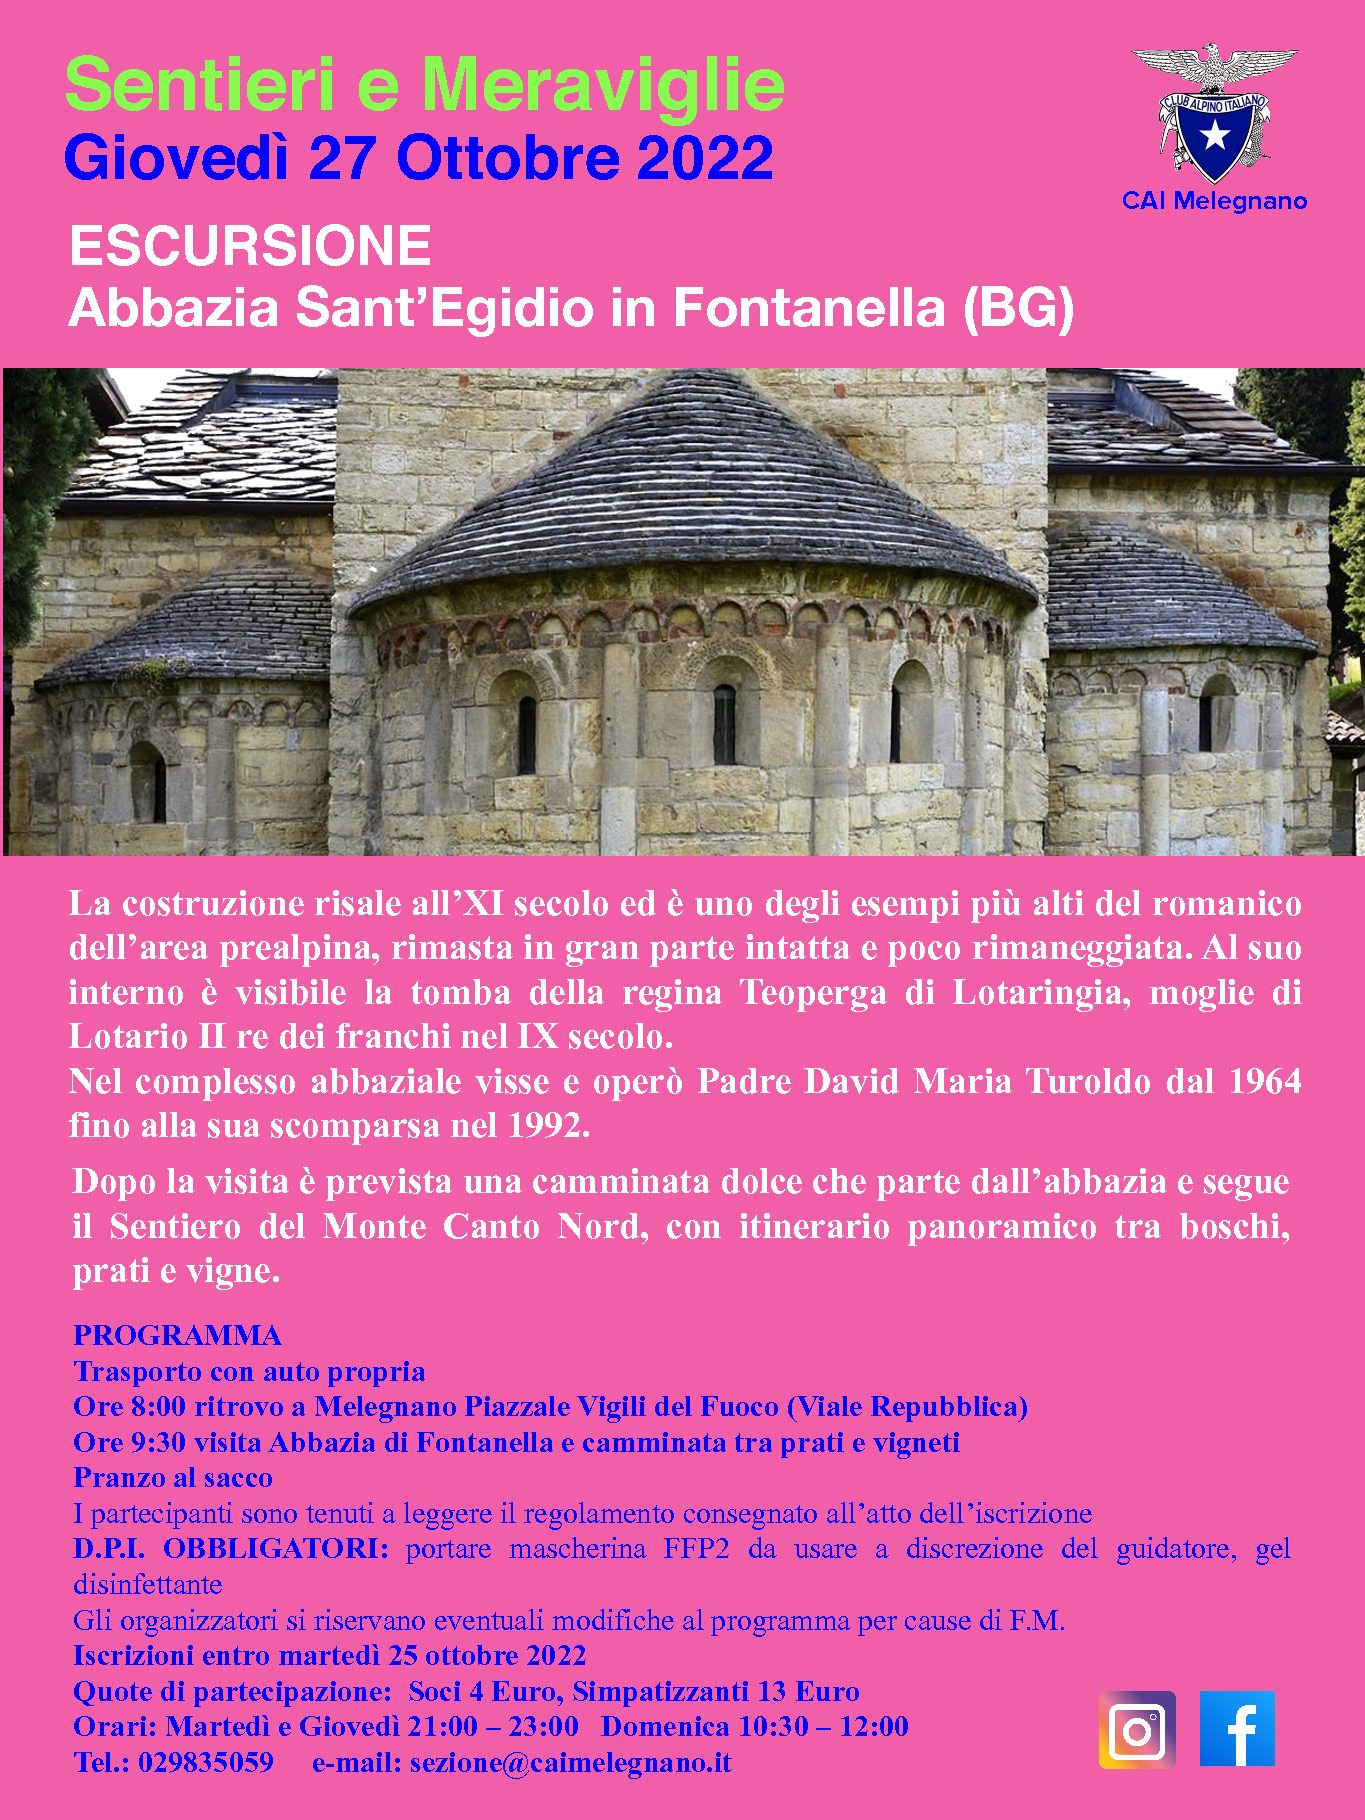 Escursione all’Abbazia di Sant’Egidio in Fontanella (BG)